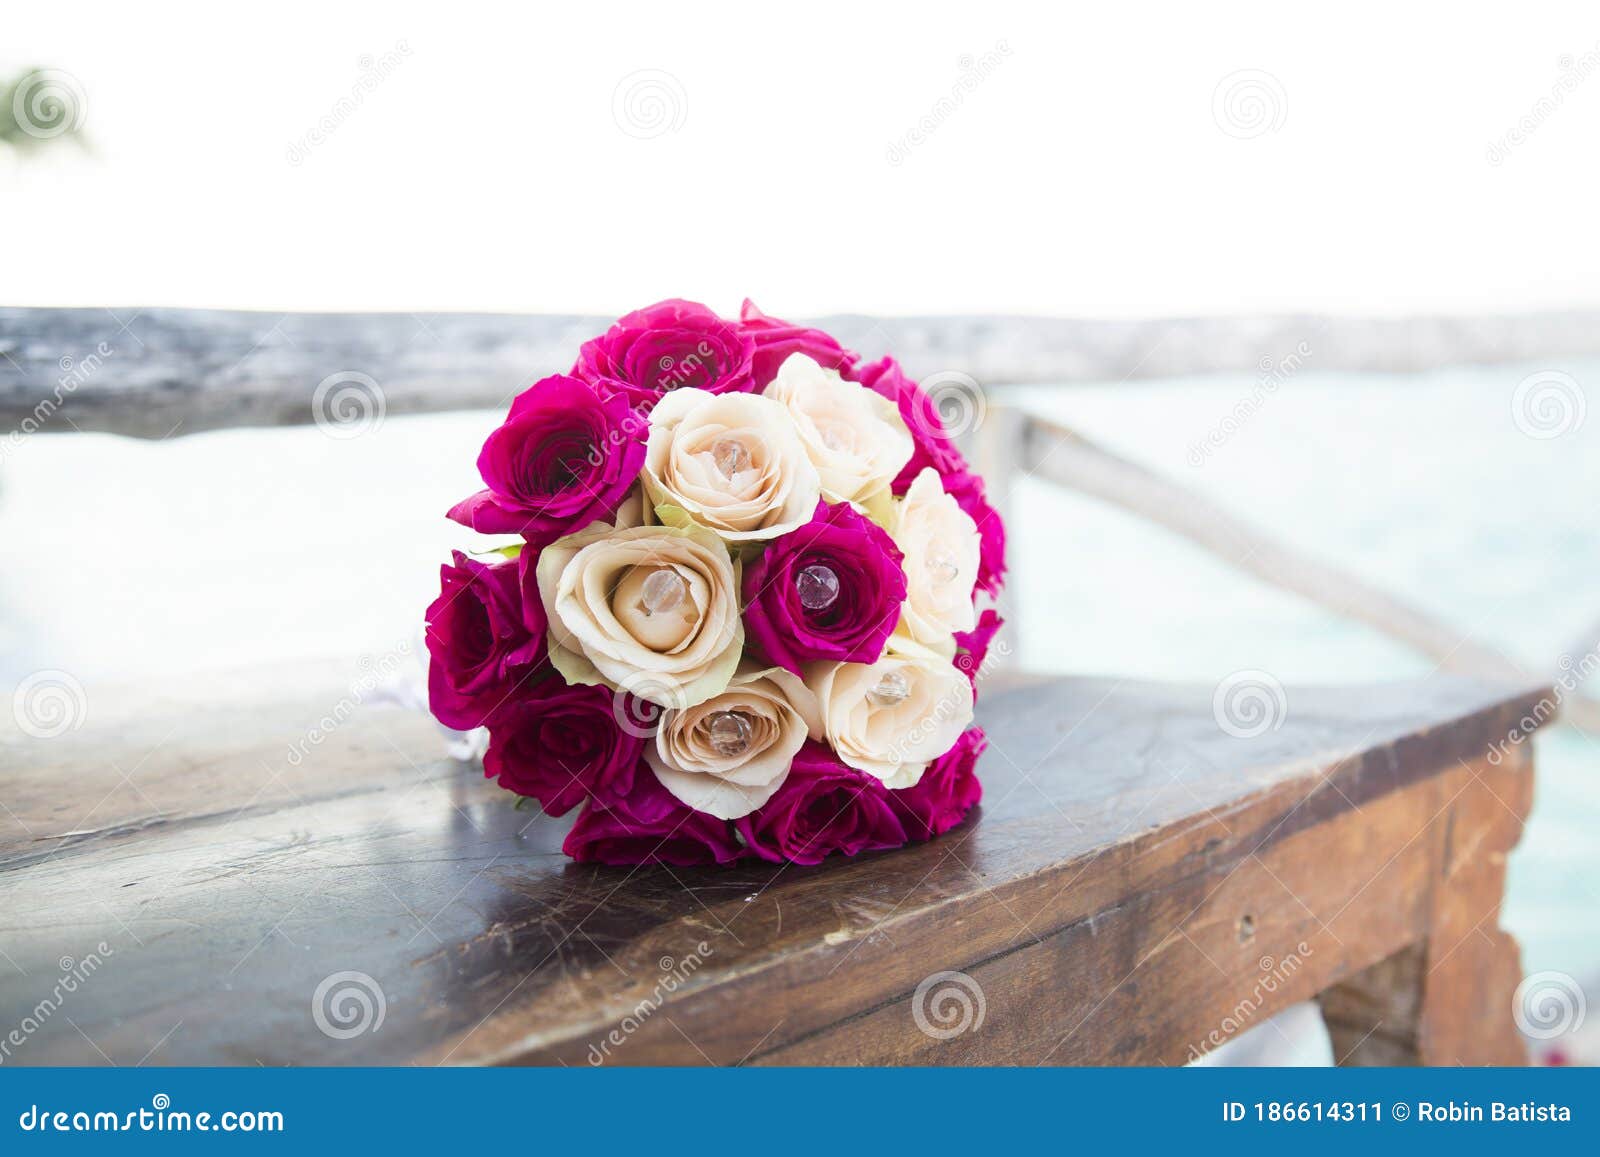 Inspiração Do Buquê De Flores De Casamento Imagem de Stock - Imagem de  buquê, romântico: 186614311